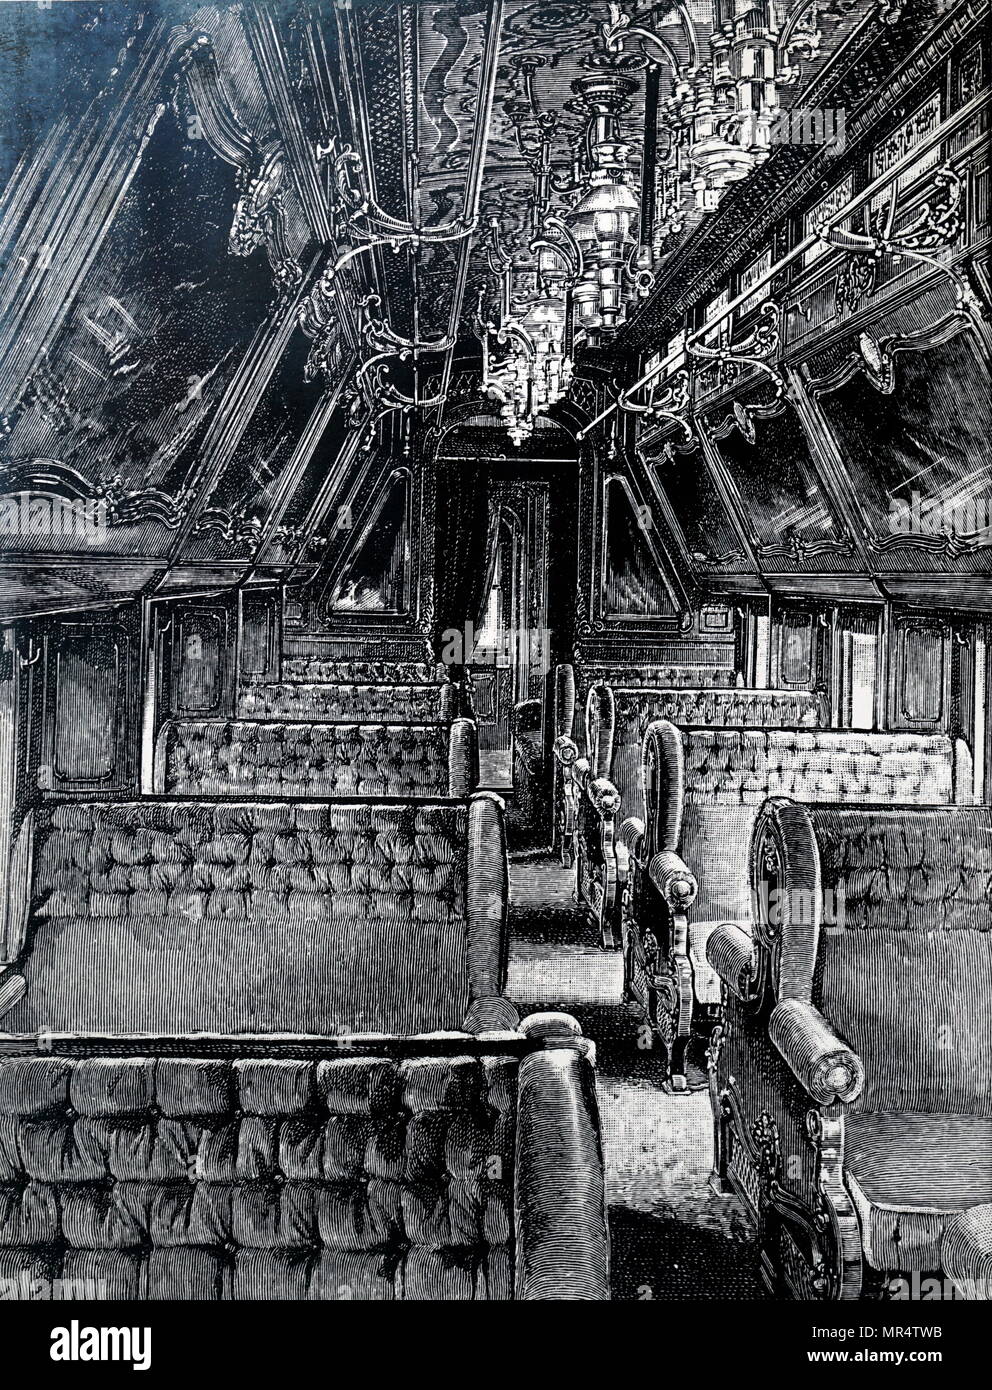 Kupferstich mit der Darstellung eines Pullman sleeper Auto auf einem Vorraum Zug, der vorhallen an ihren Enden eingeschlossen hat, im Gegensatz zu den offenen Plattformen, die sich auf frühe Autos. Vom 19. Jahrhundert Stockfoto